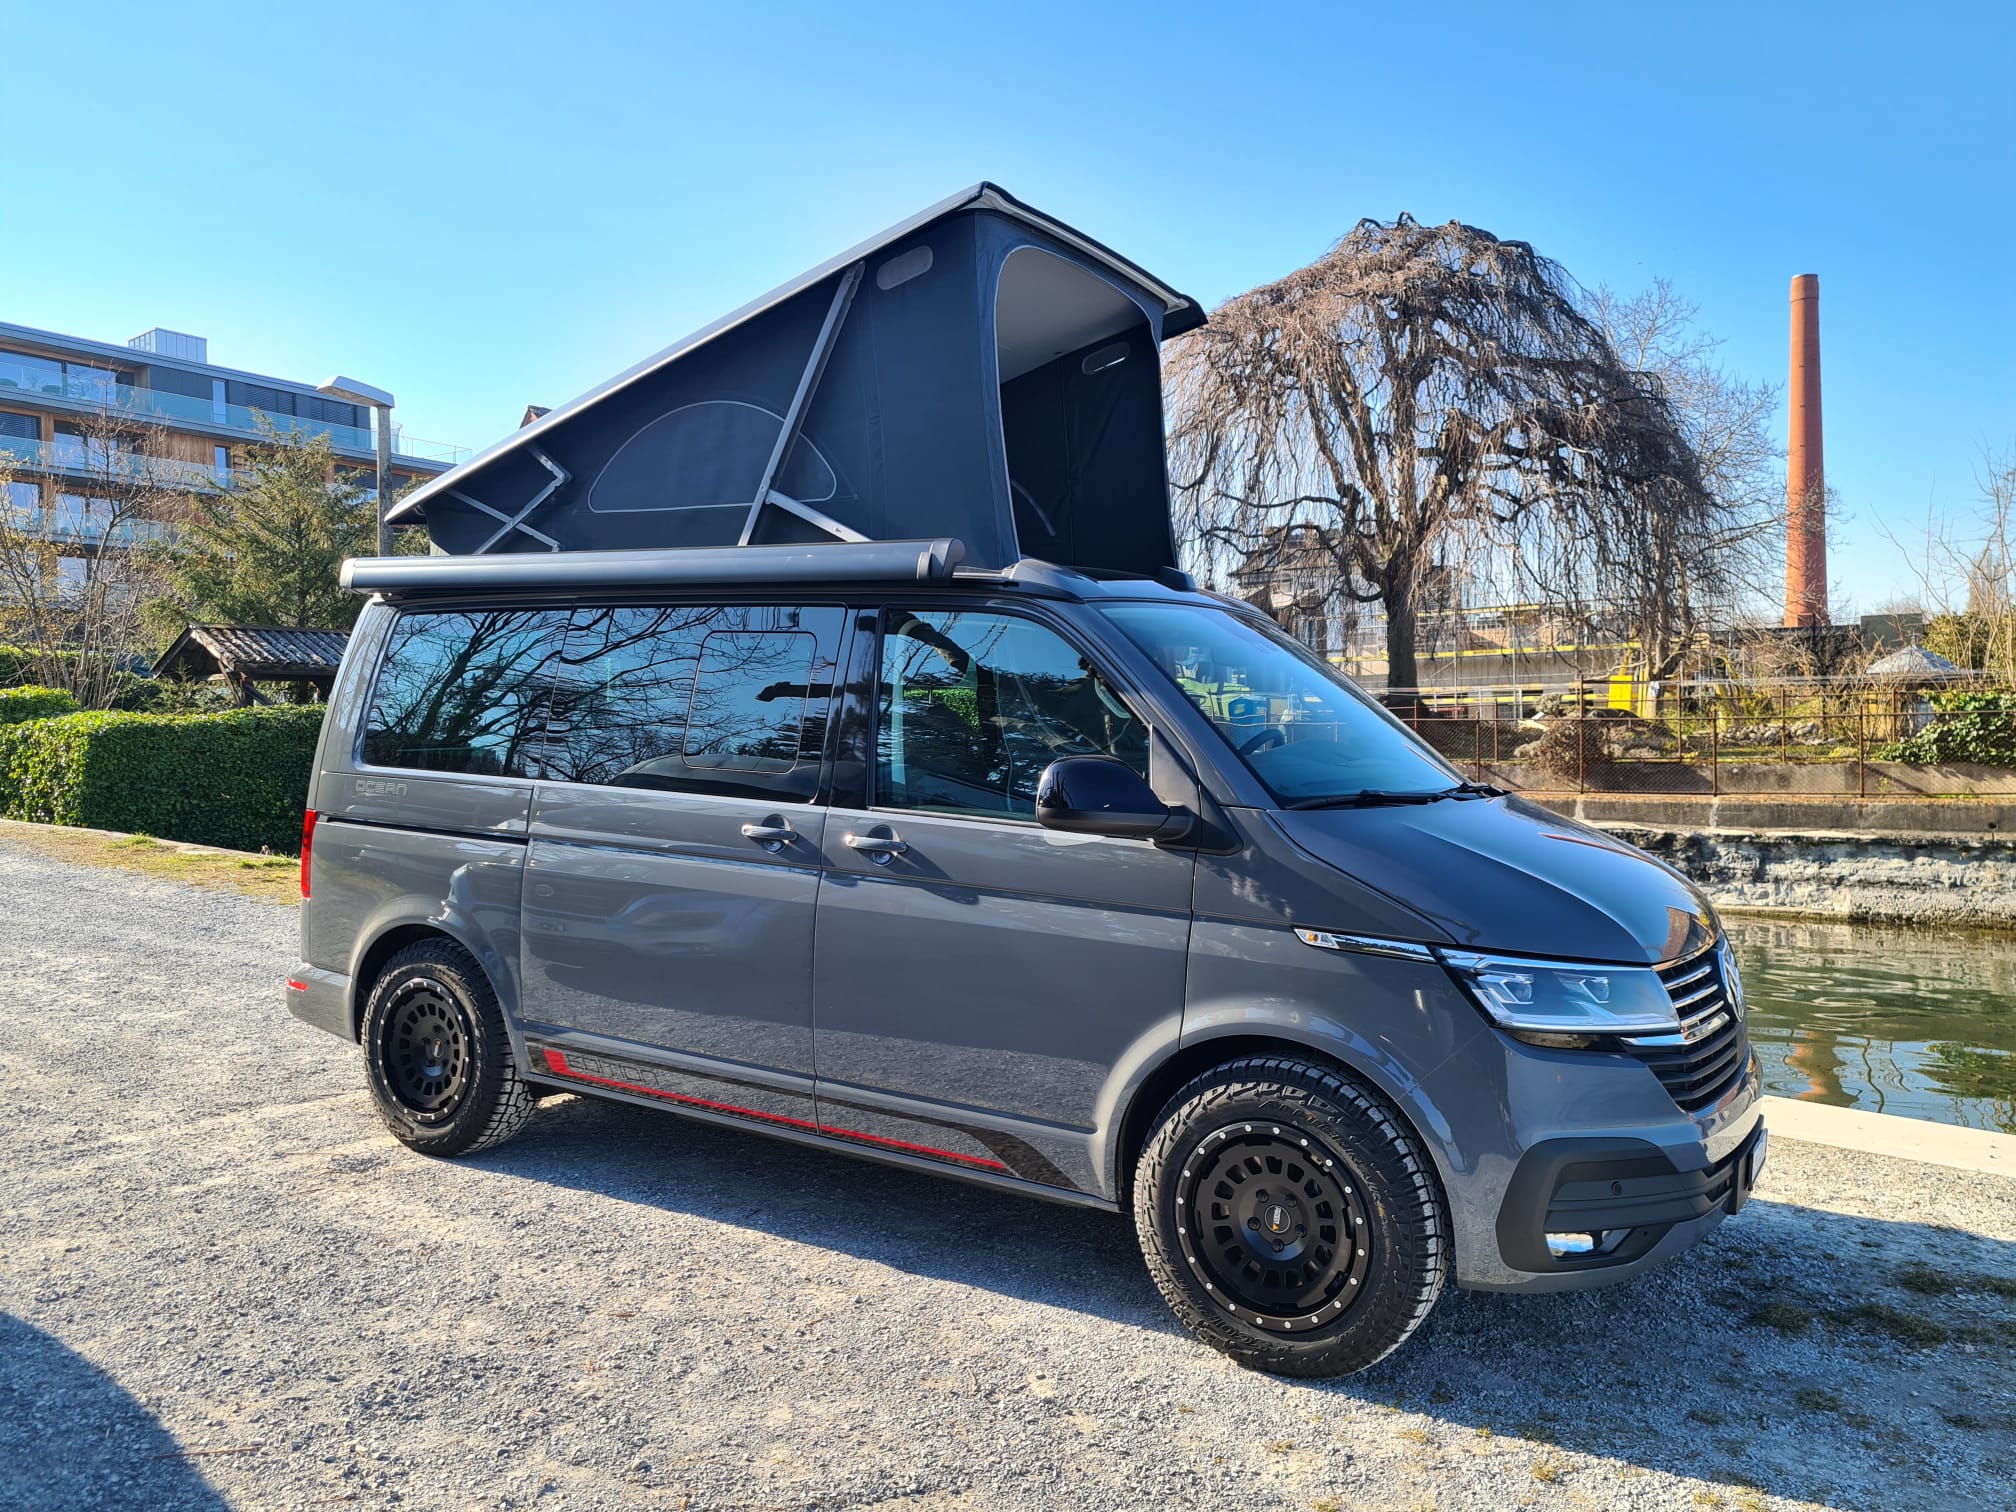 Jerry-VW-Camping-Bus-T6-mausgrau-schräg-von-vorne-offenes-hubdach